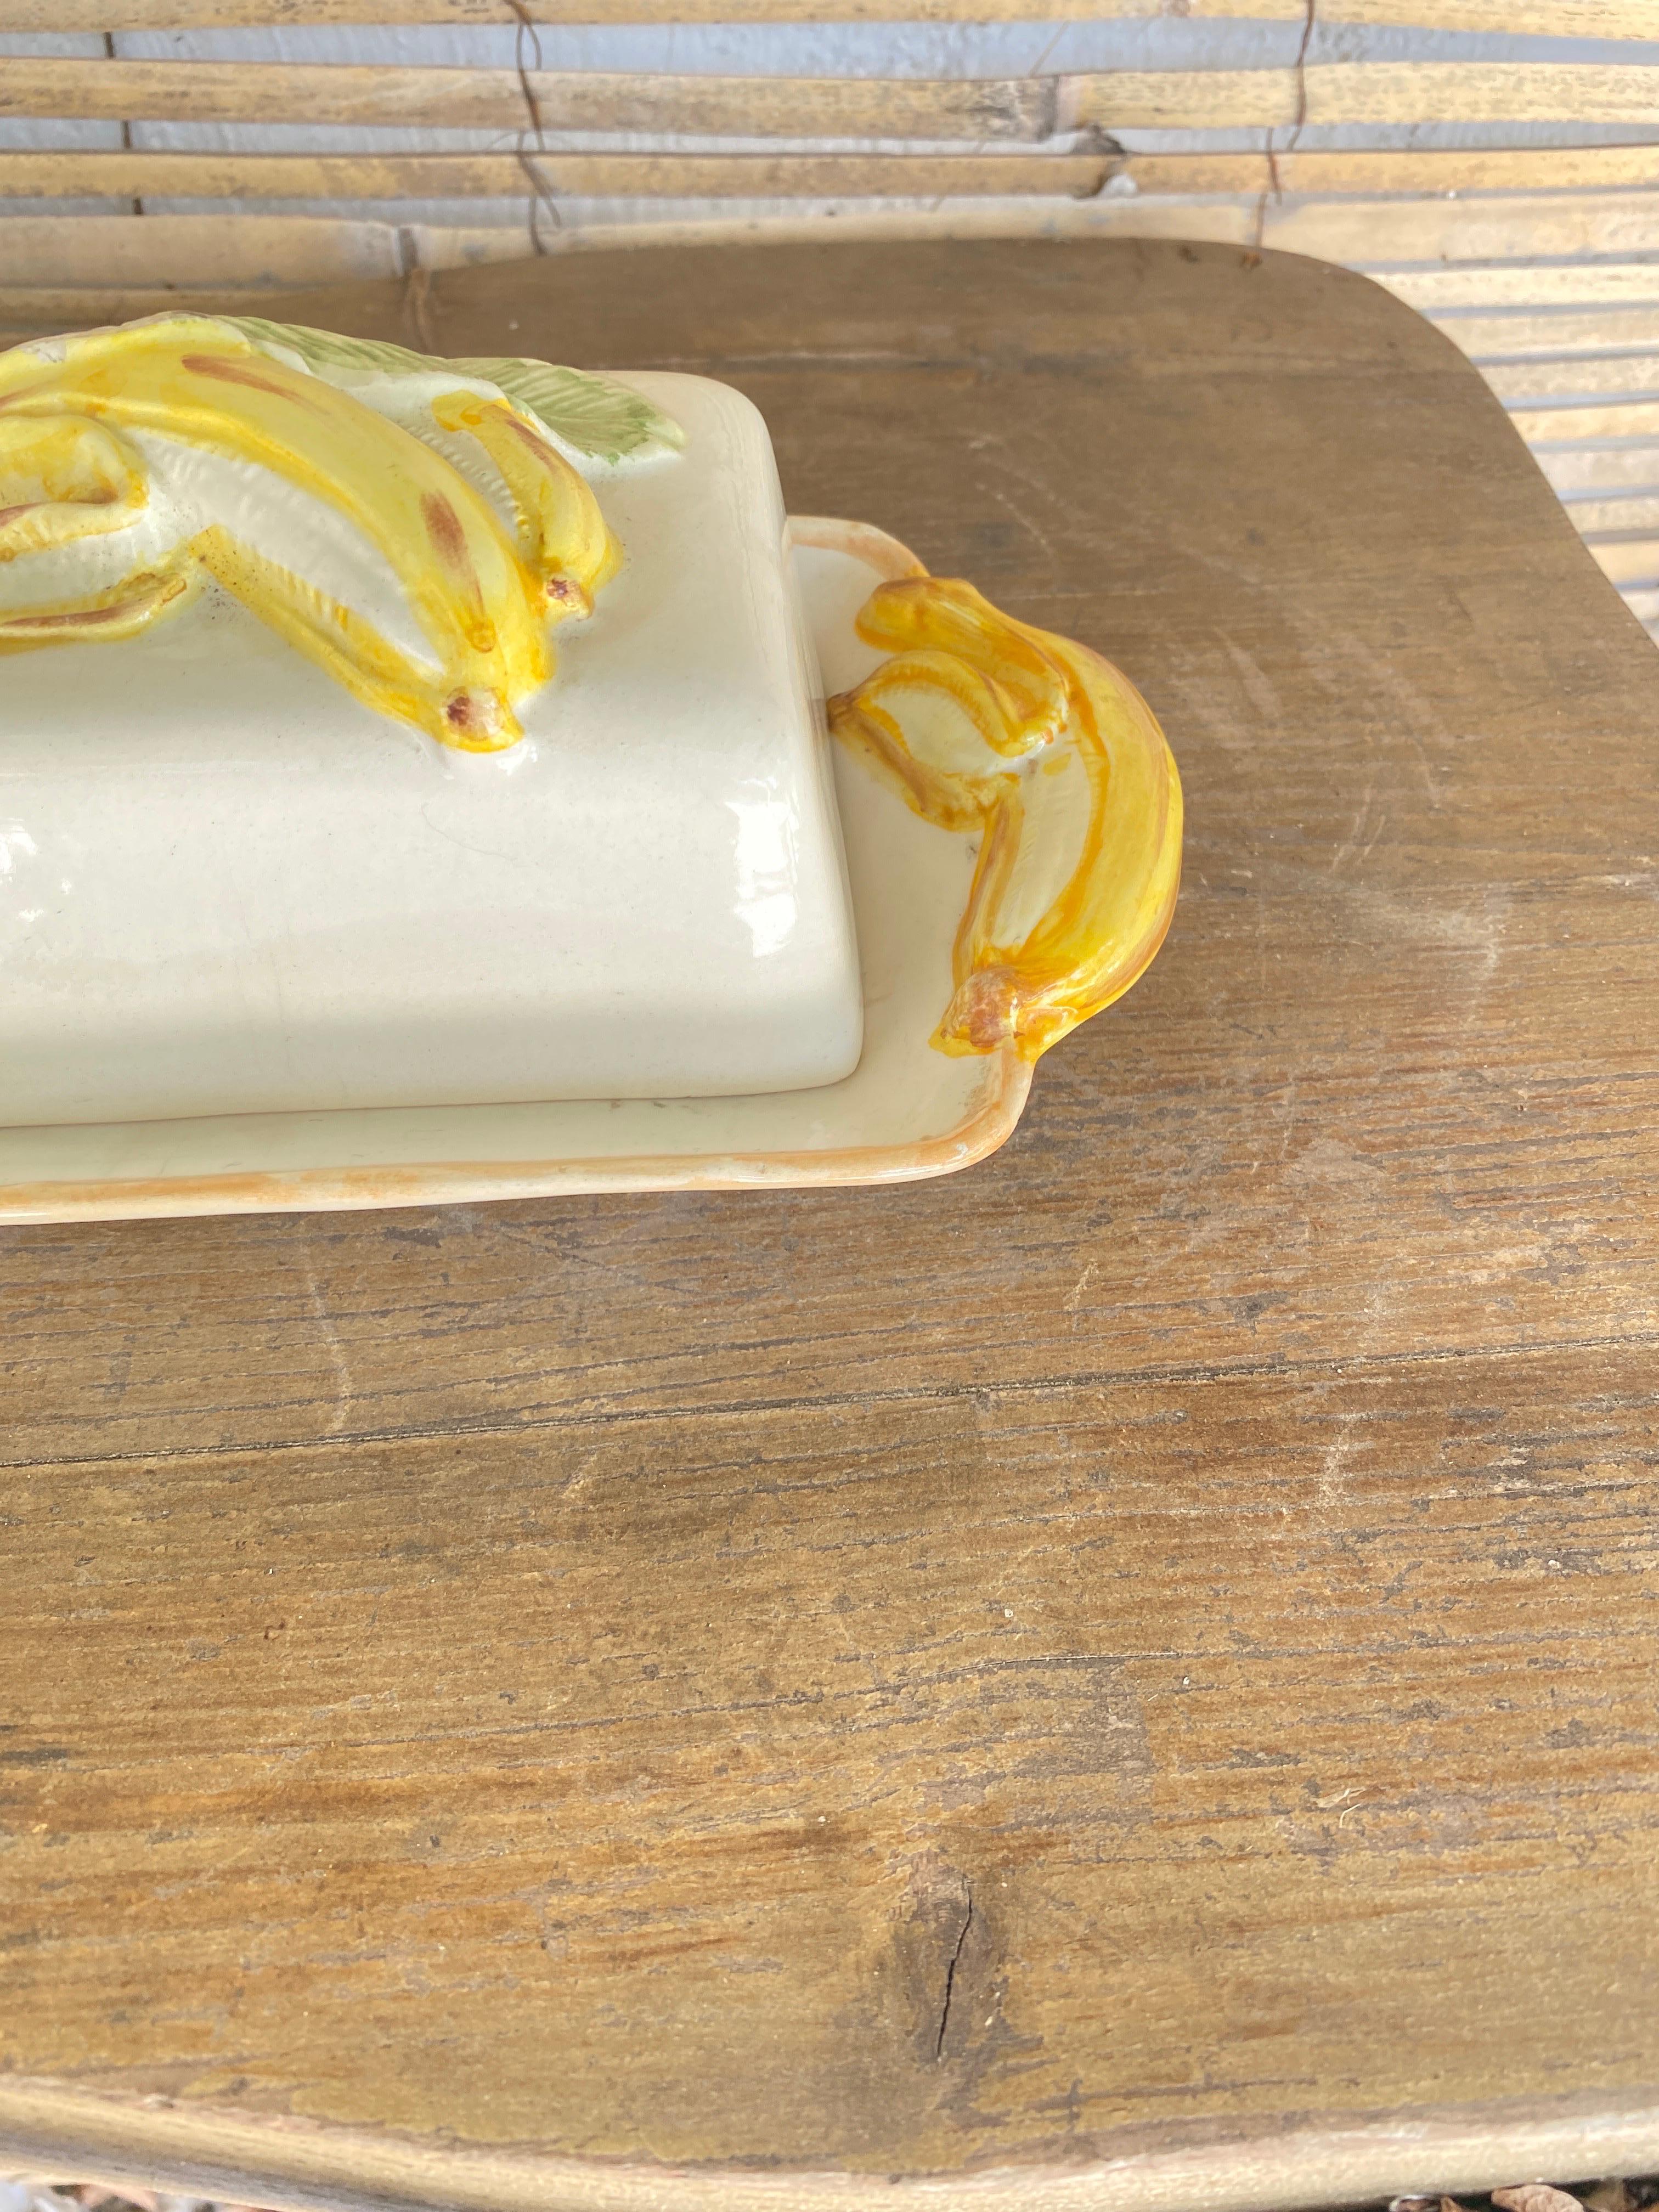 Diese Butterdose ist aus Keramik gefertigt. Es ist im Stil der Majolika gehalten. Hergestellt in Portugal in den 1970er Jahren. Er ist aus weißer und gelber Keramik gefertigt. Die Dekoration besteht aus gelben Bananen, die aus Keramik geformt sind.